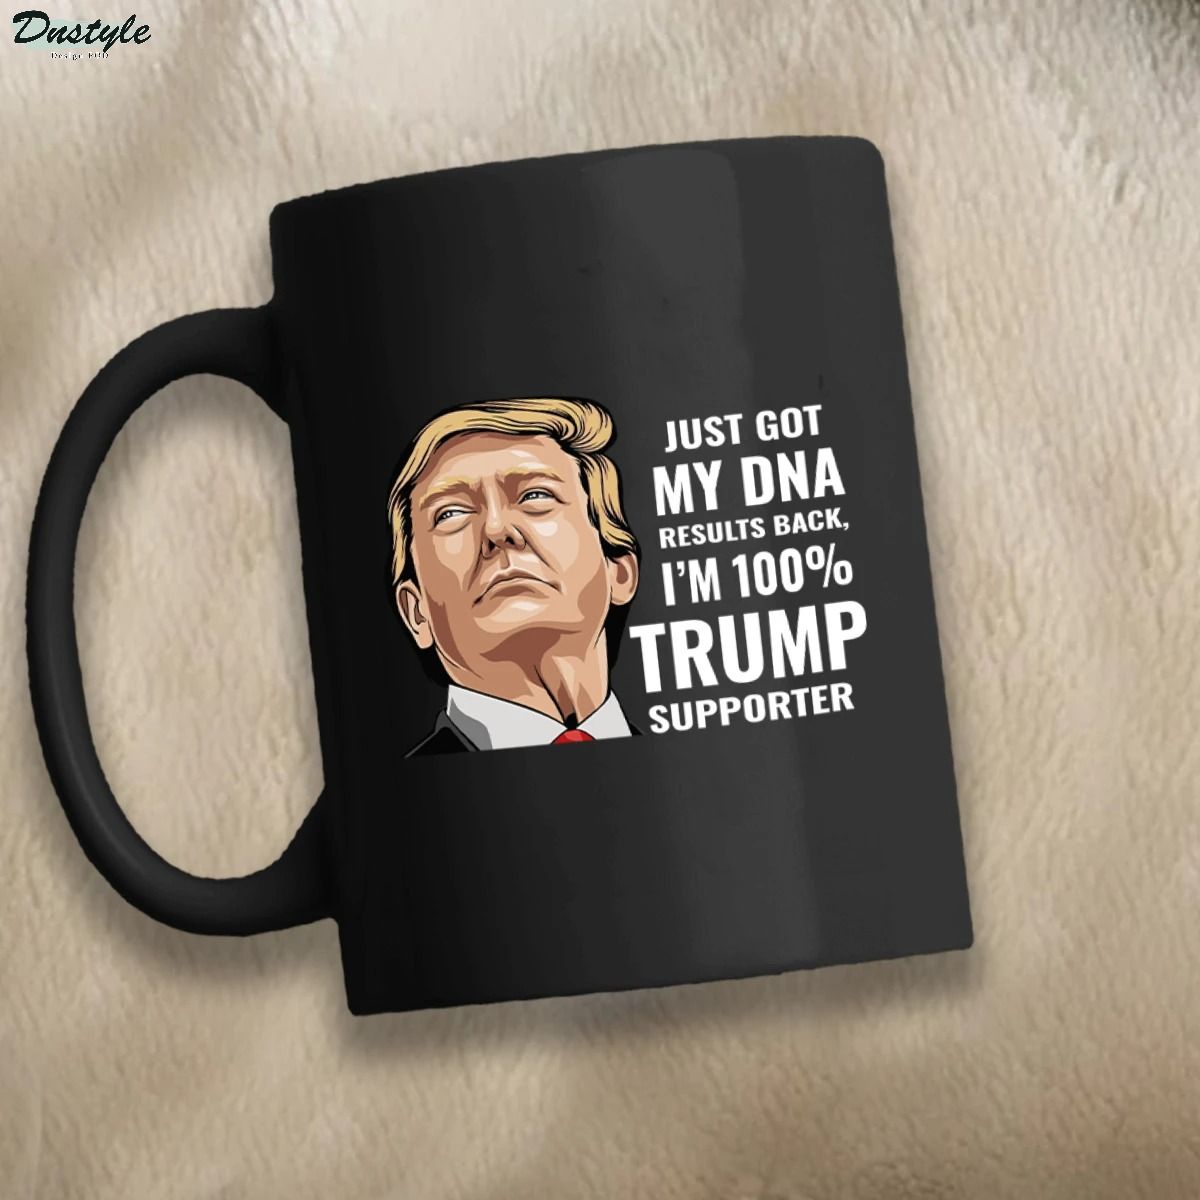 Just got my dna results back I'm 100% Trump supporter mug 3